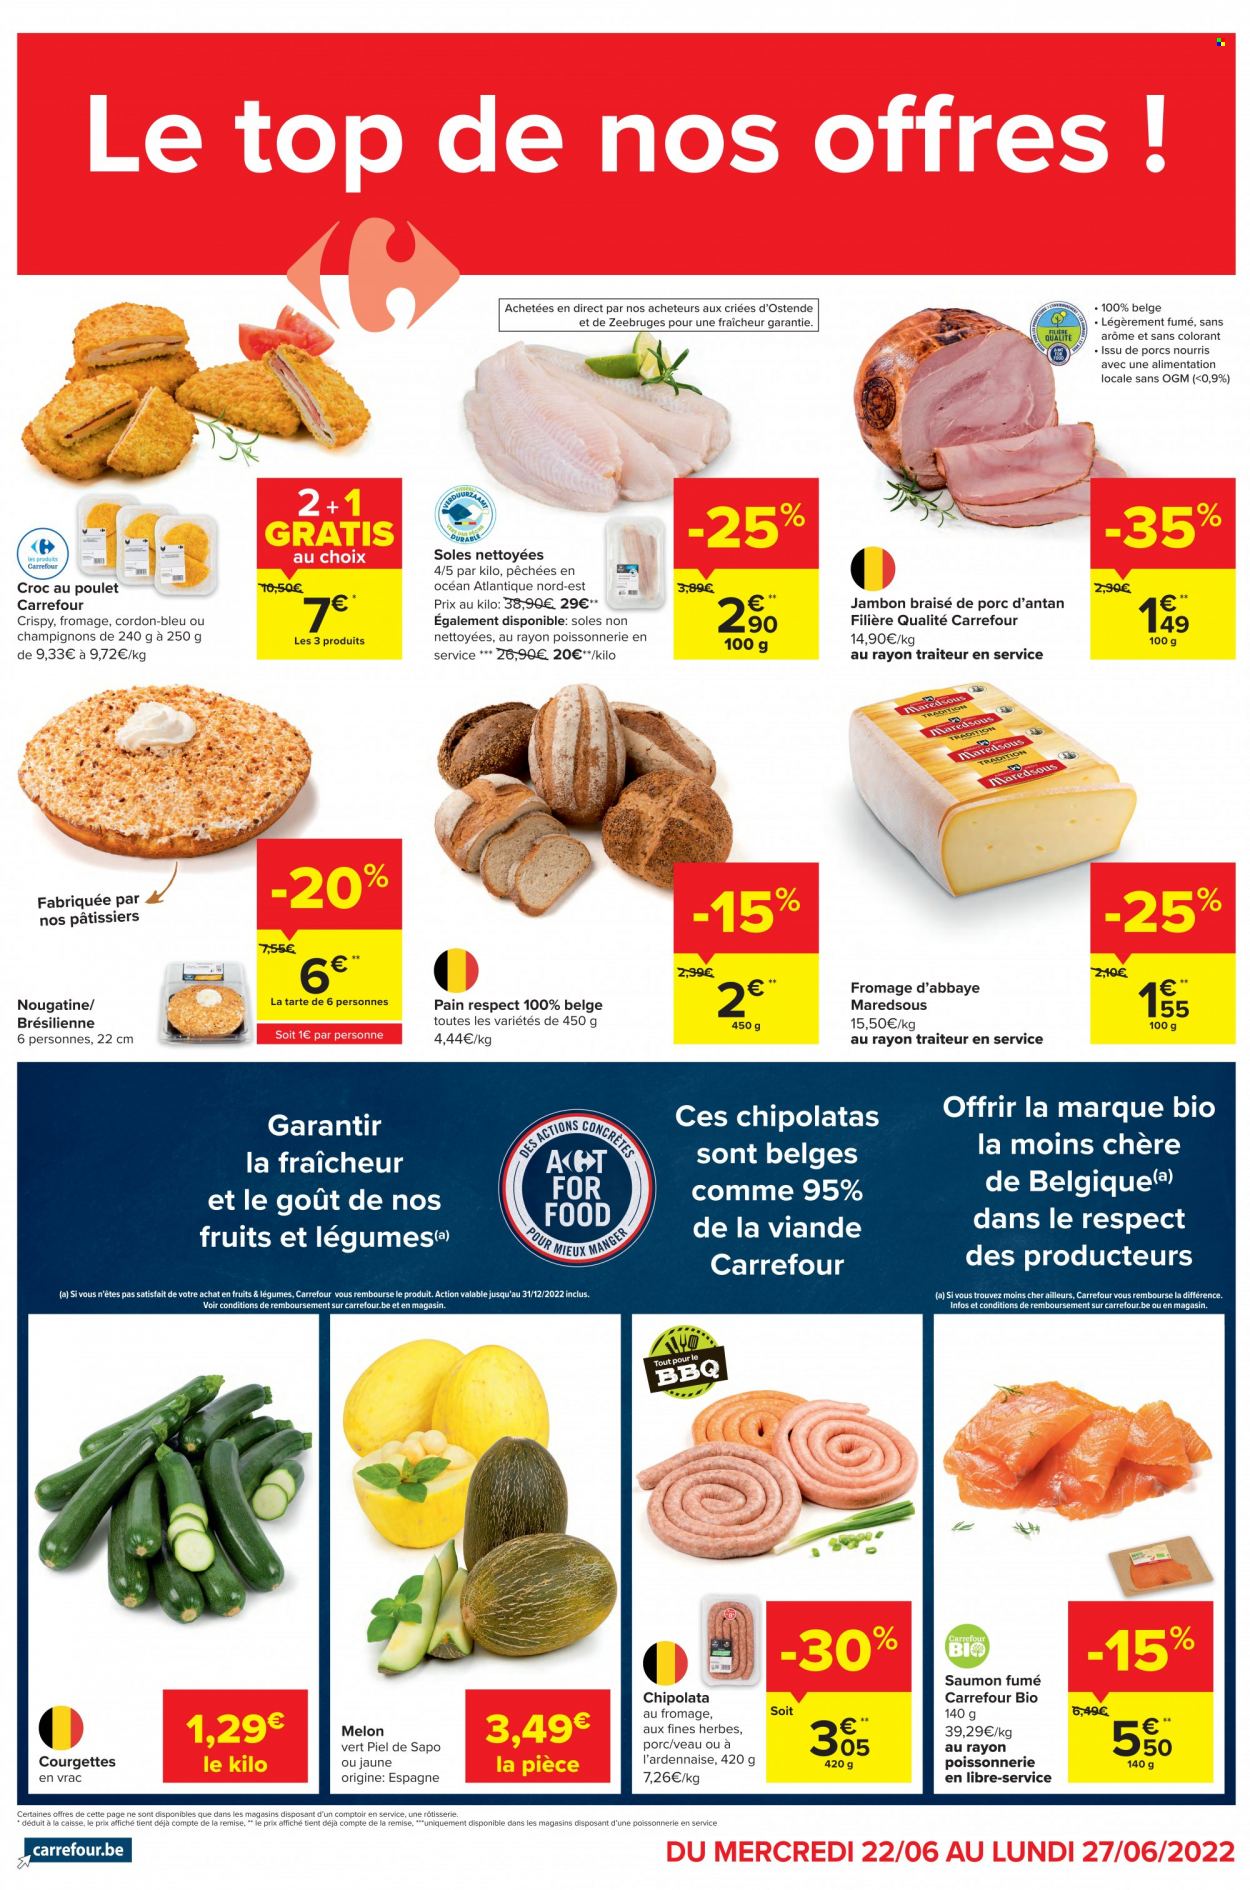 thumbnail - Catalogue Carrefour - 22/06/2022 - 27/06/2022 - Produits soldés - courgette, melon, tarte, pain, viande de veau, jambon, chipolata, saumon fumé. Page 1.